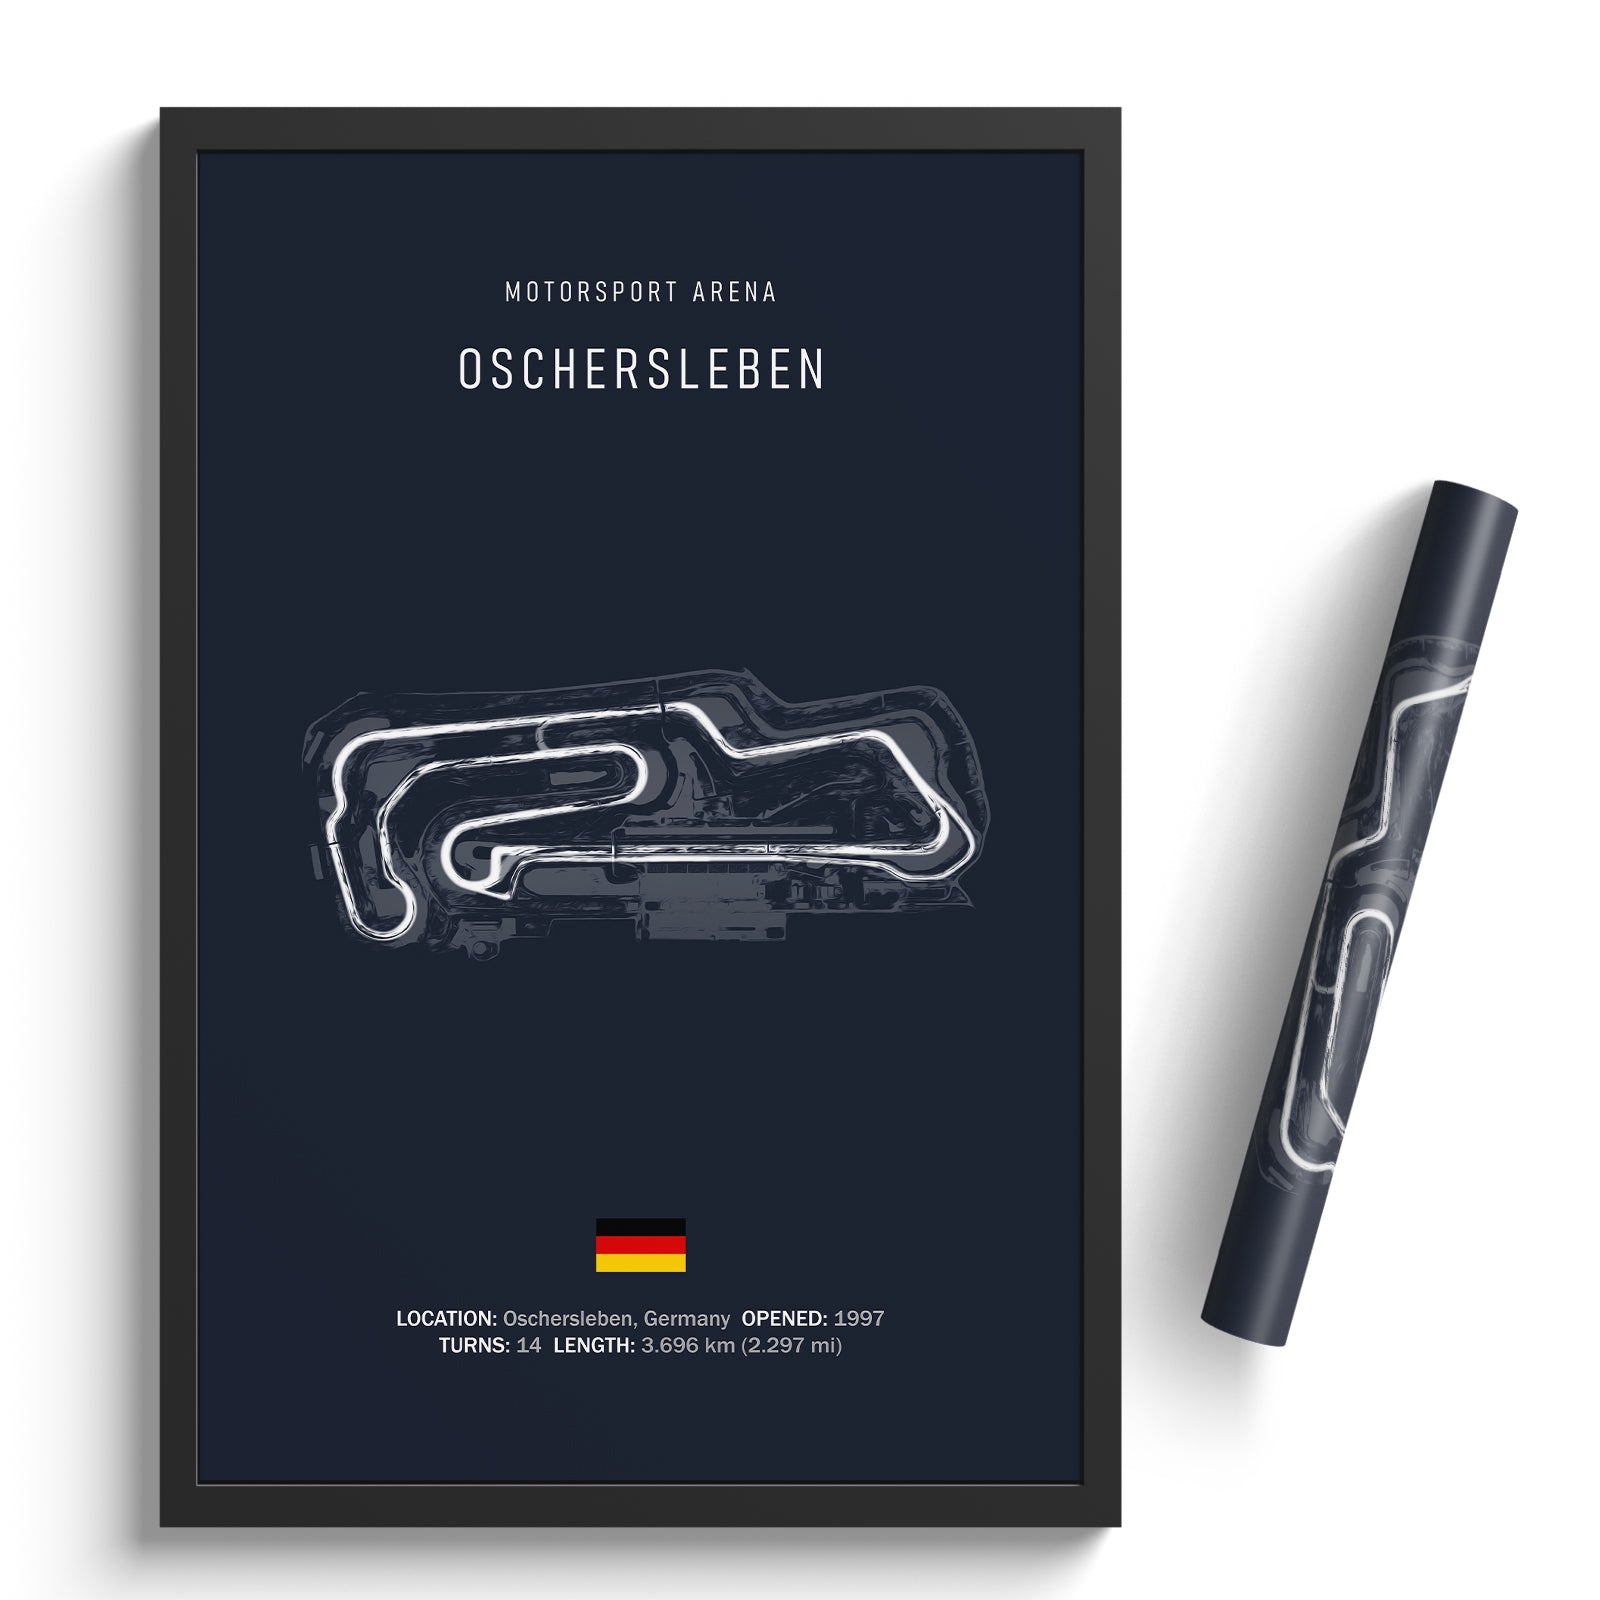 Motorsport Arena Oschersleben - Racetrack Print